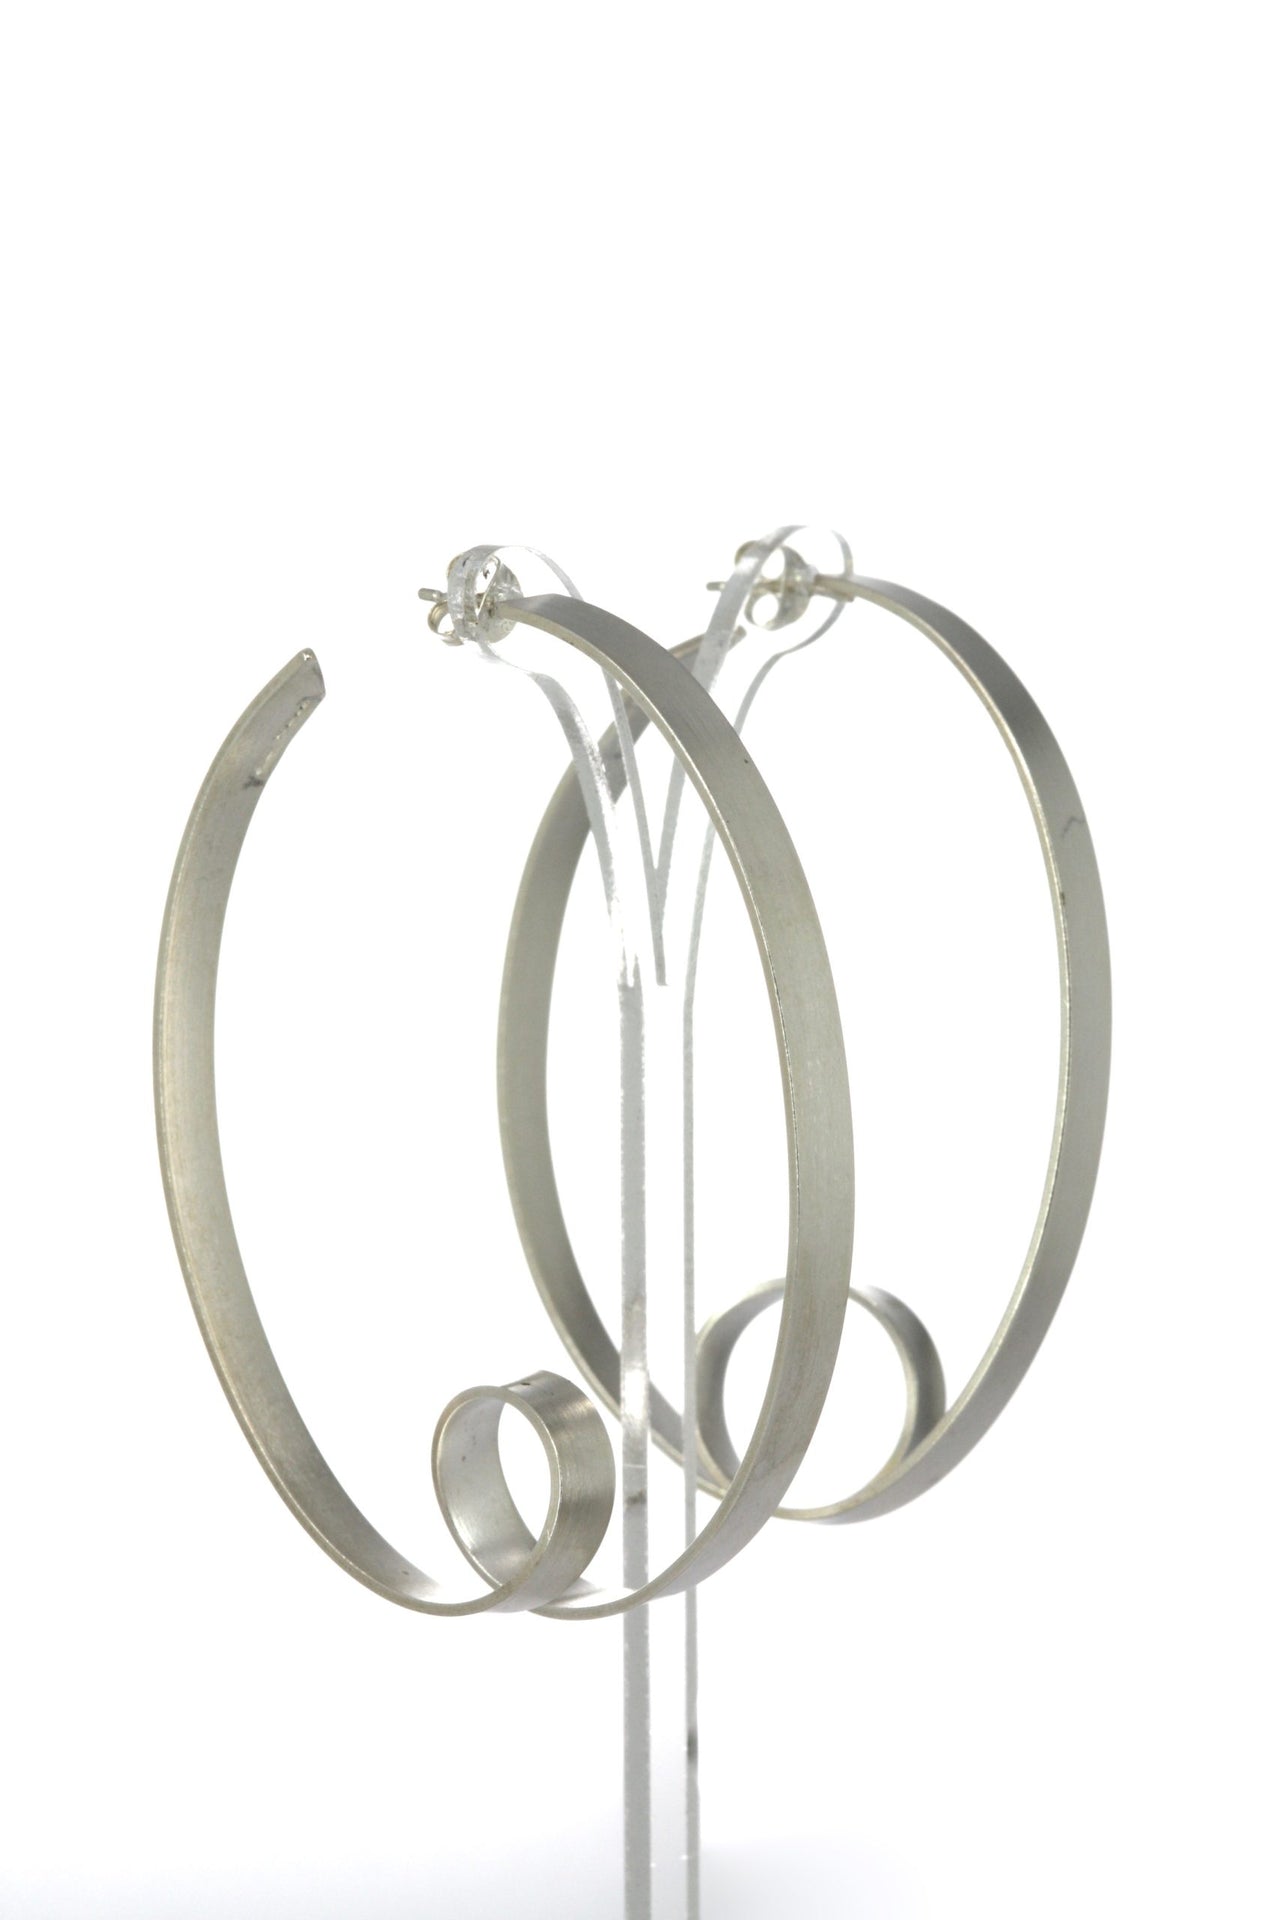 Ribbon Oval Loop Earrings - Large